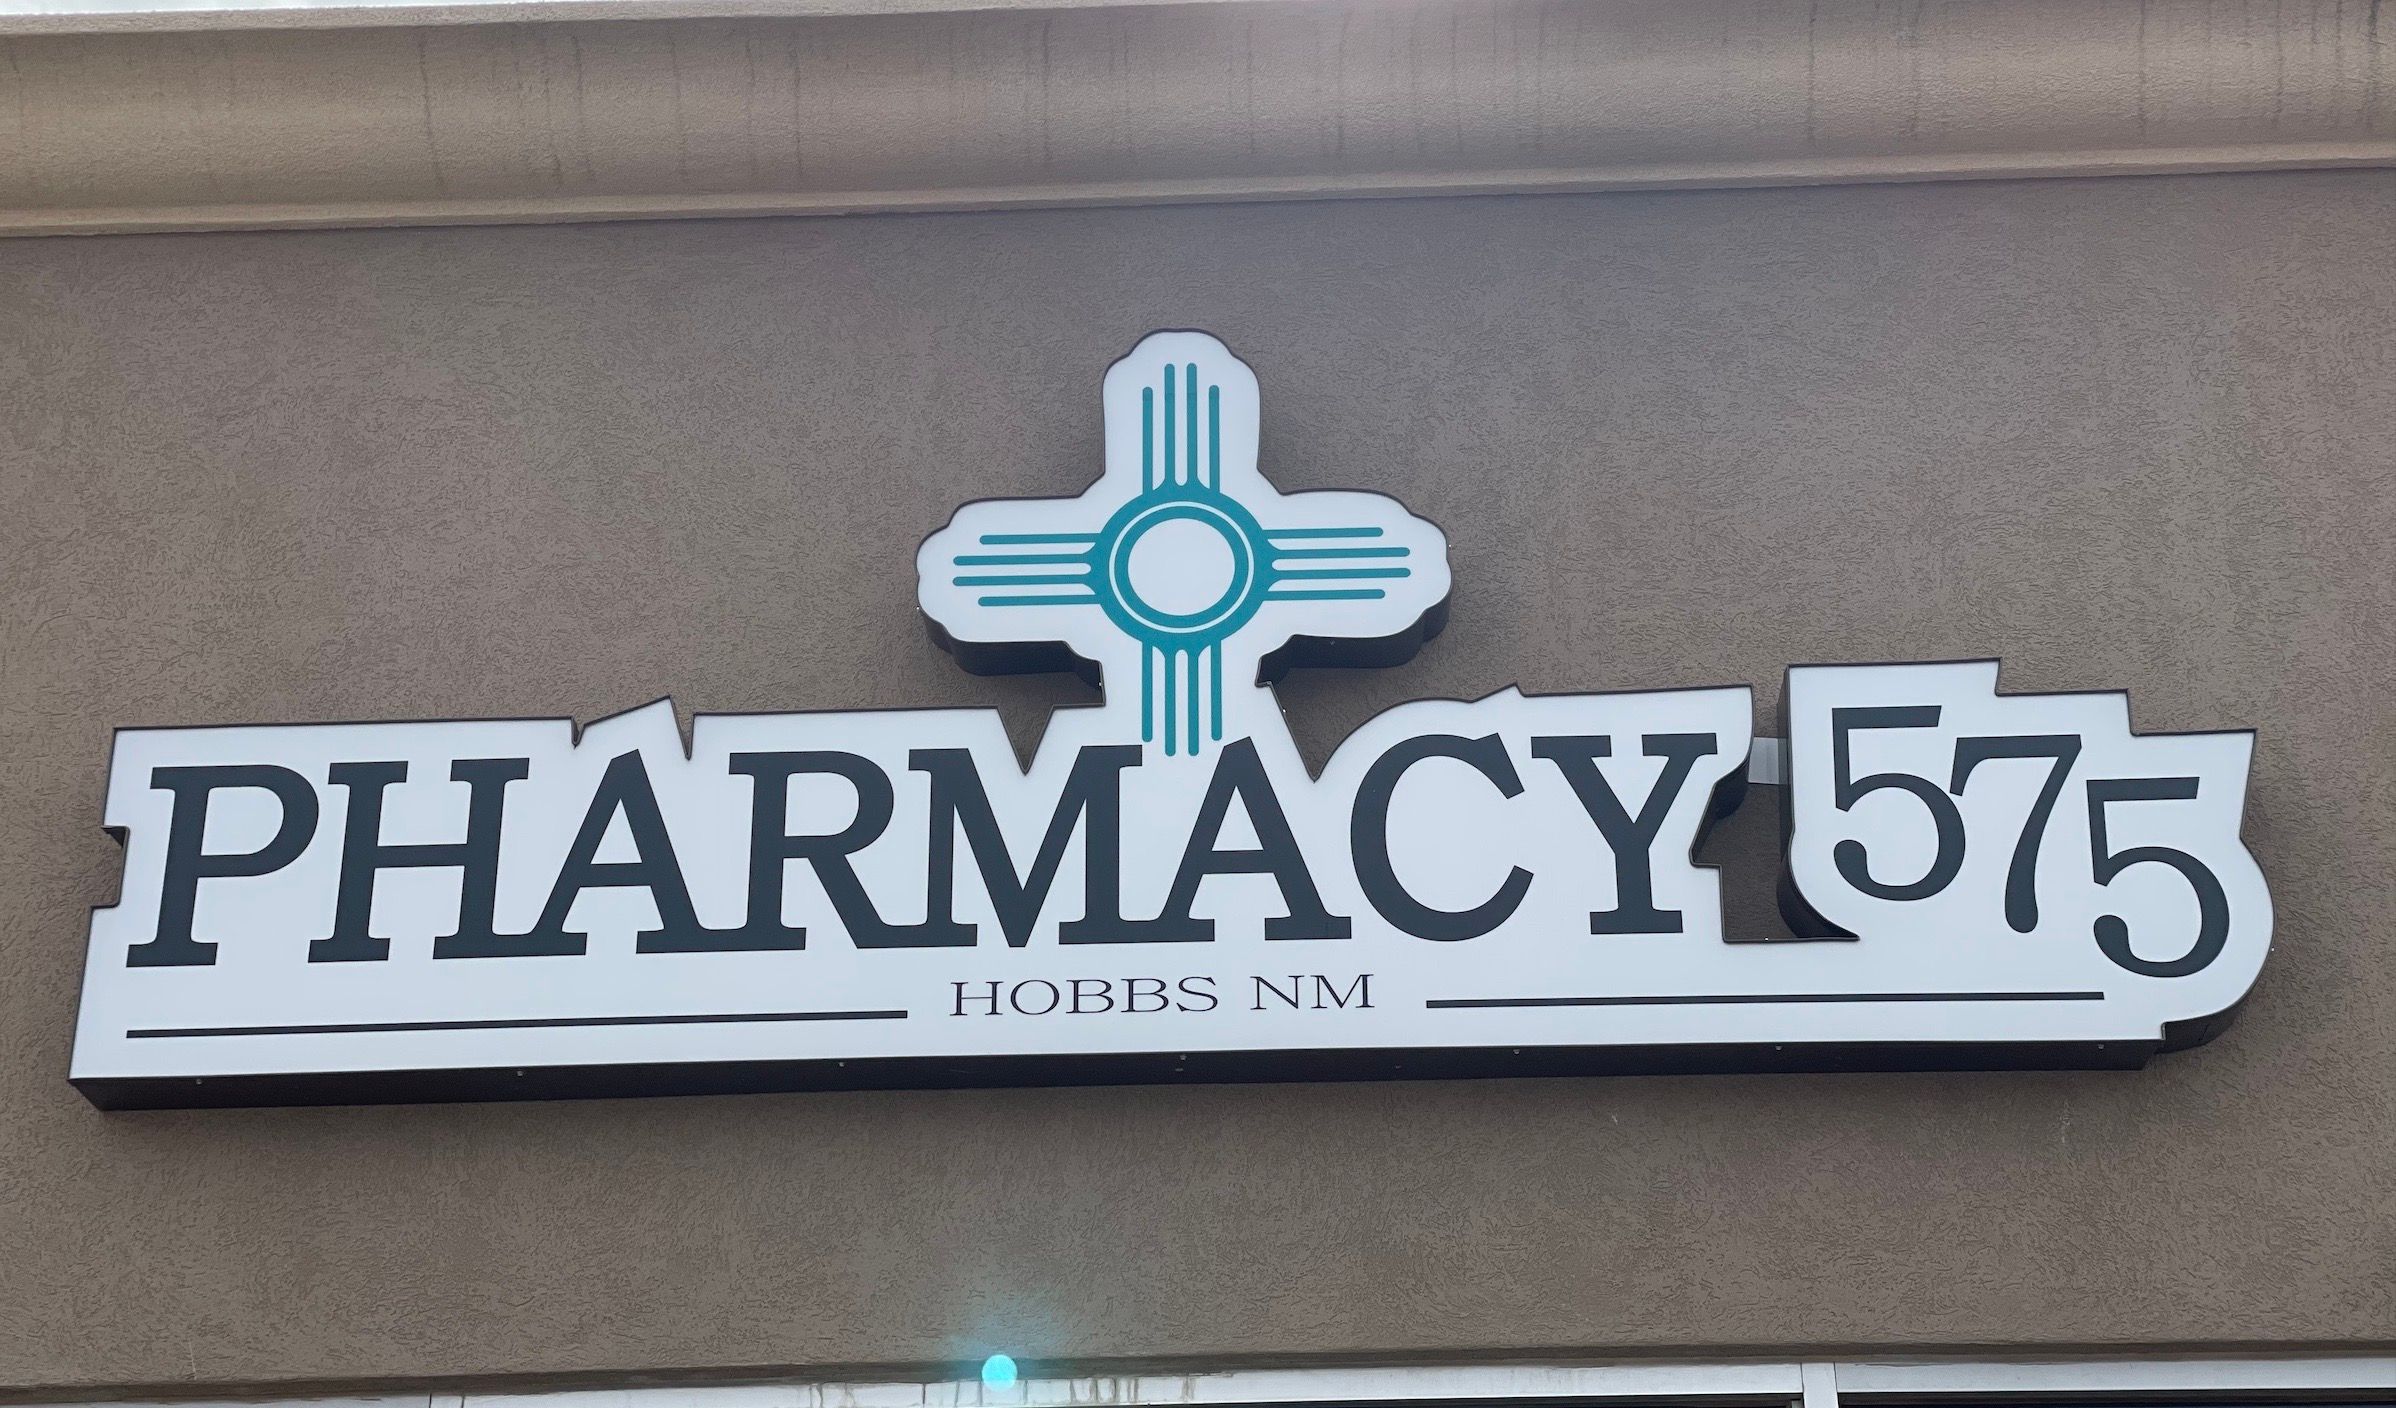 Pharmacy 575 